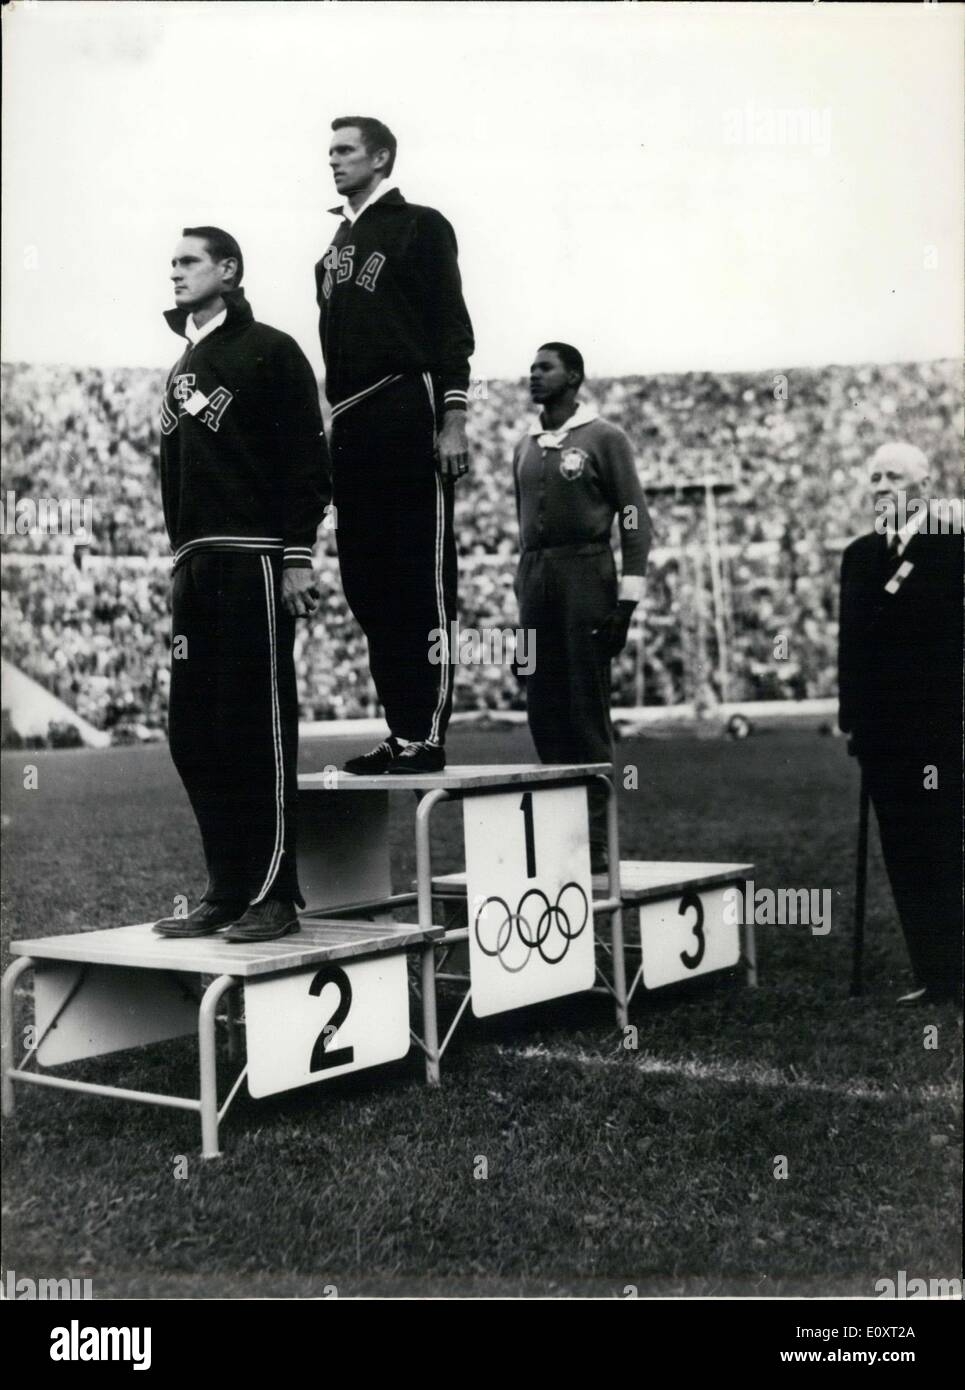 Septembre 01, 1967 - C'est au cours de l'Jeux olympiques de 1952 à Helsinki. Davis de l'USA a gagné l'or, Wiesner des USA a gagné l'argent, et Banque D'Images